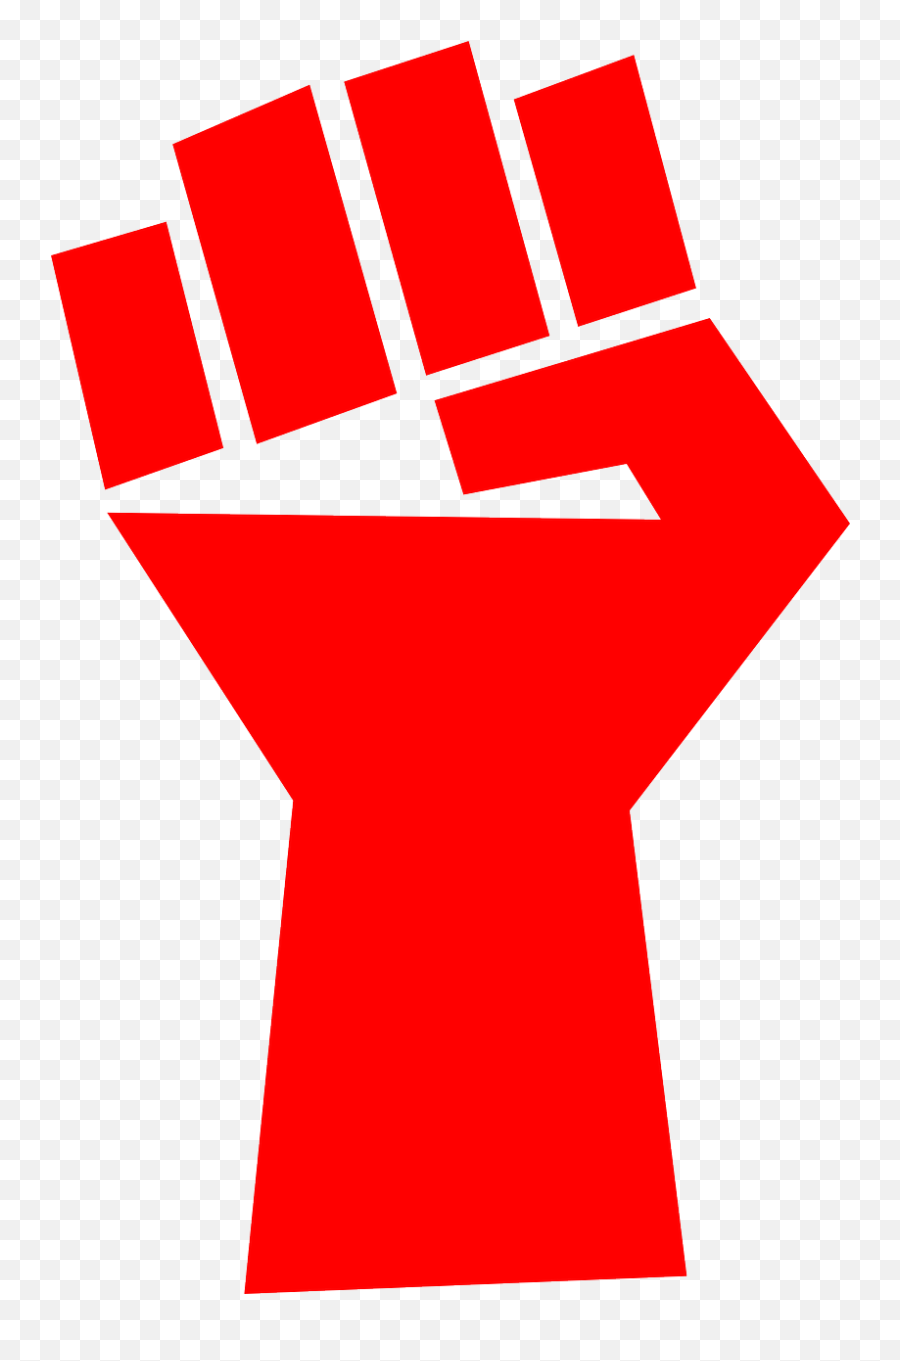 Fist Red Communism Fight Public Domain Image - Freeimg Howard Stern T Shirts Emoji,Fist Bump Emoji